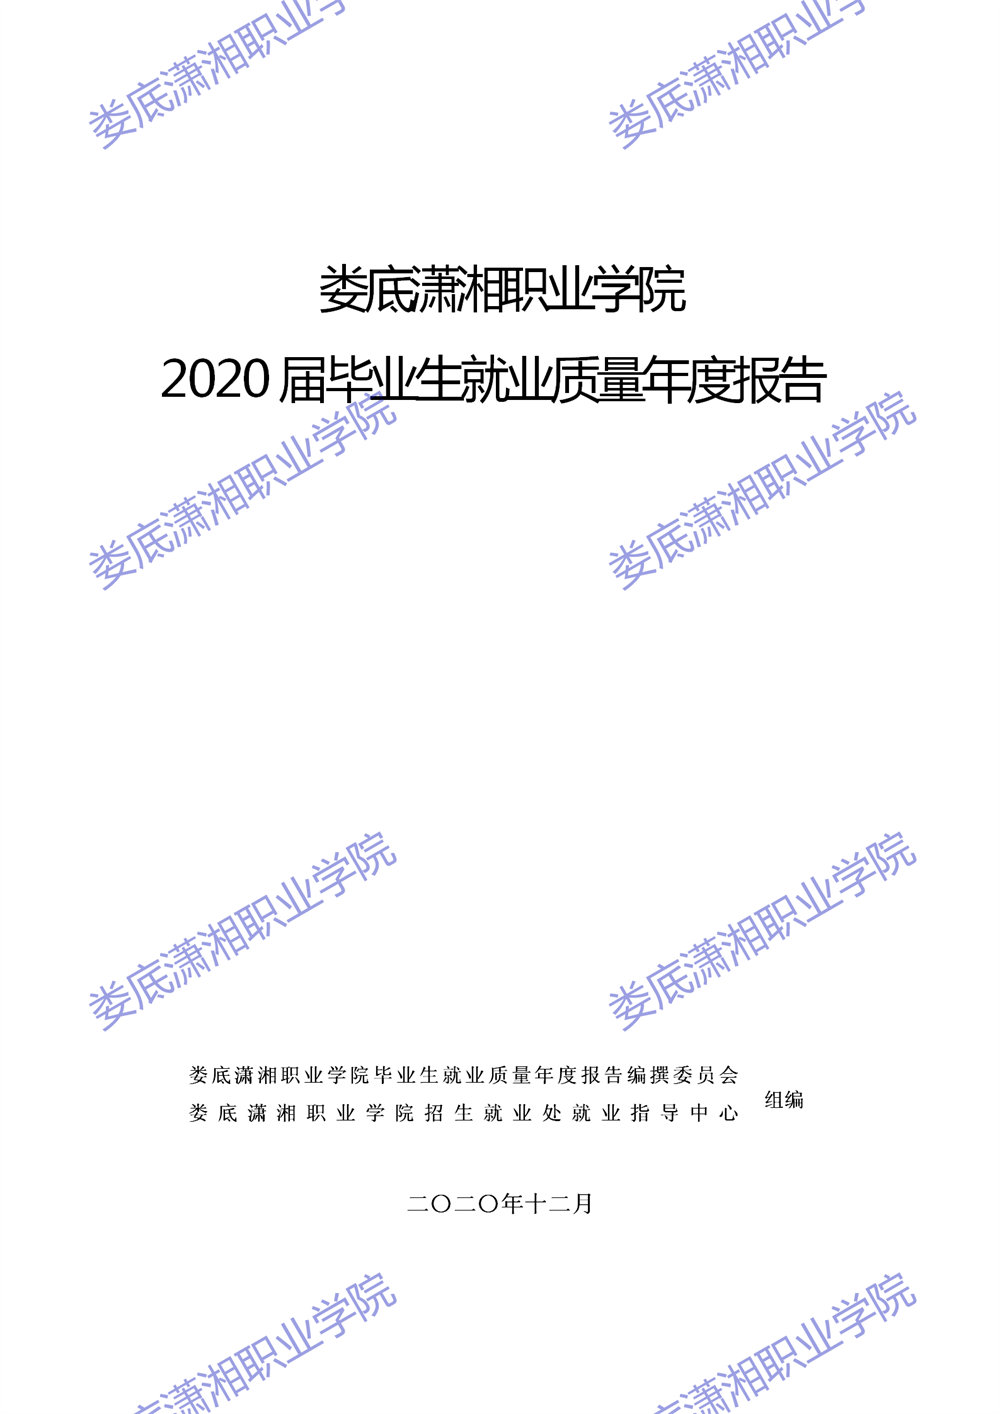 娄底潇湘职业学院2020届毕业生就业质量年度报告